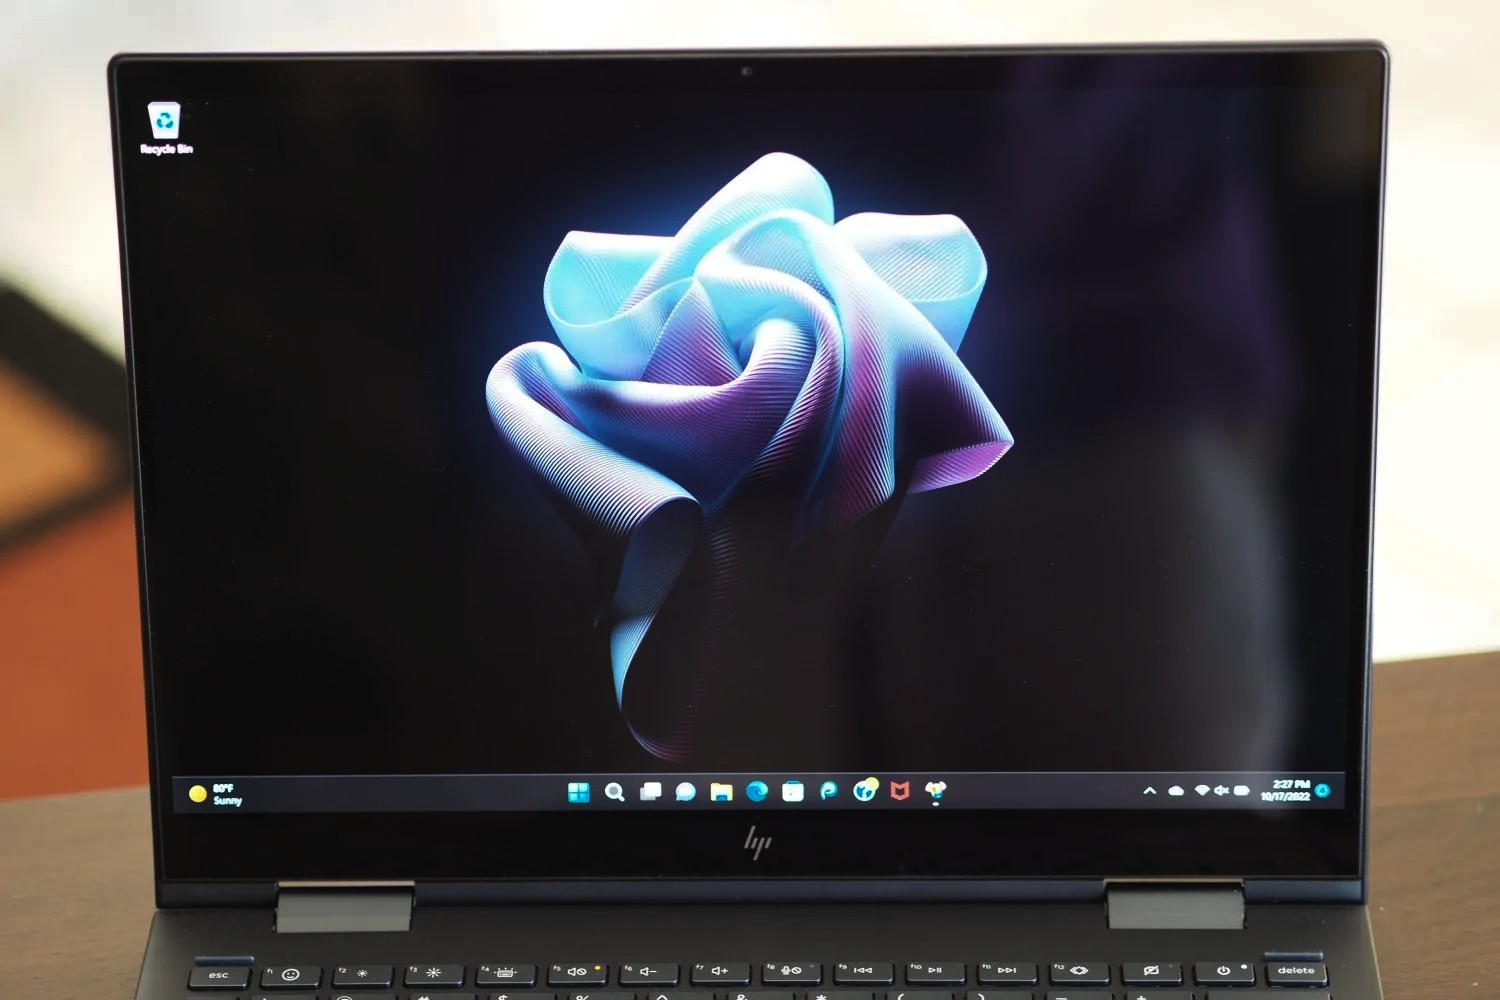 Vista frontal do HP Envy x360 13 2022 mostrando a tela.